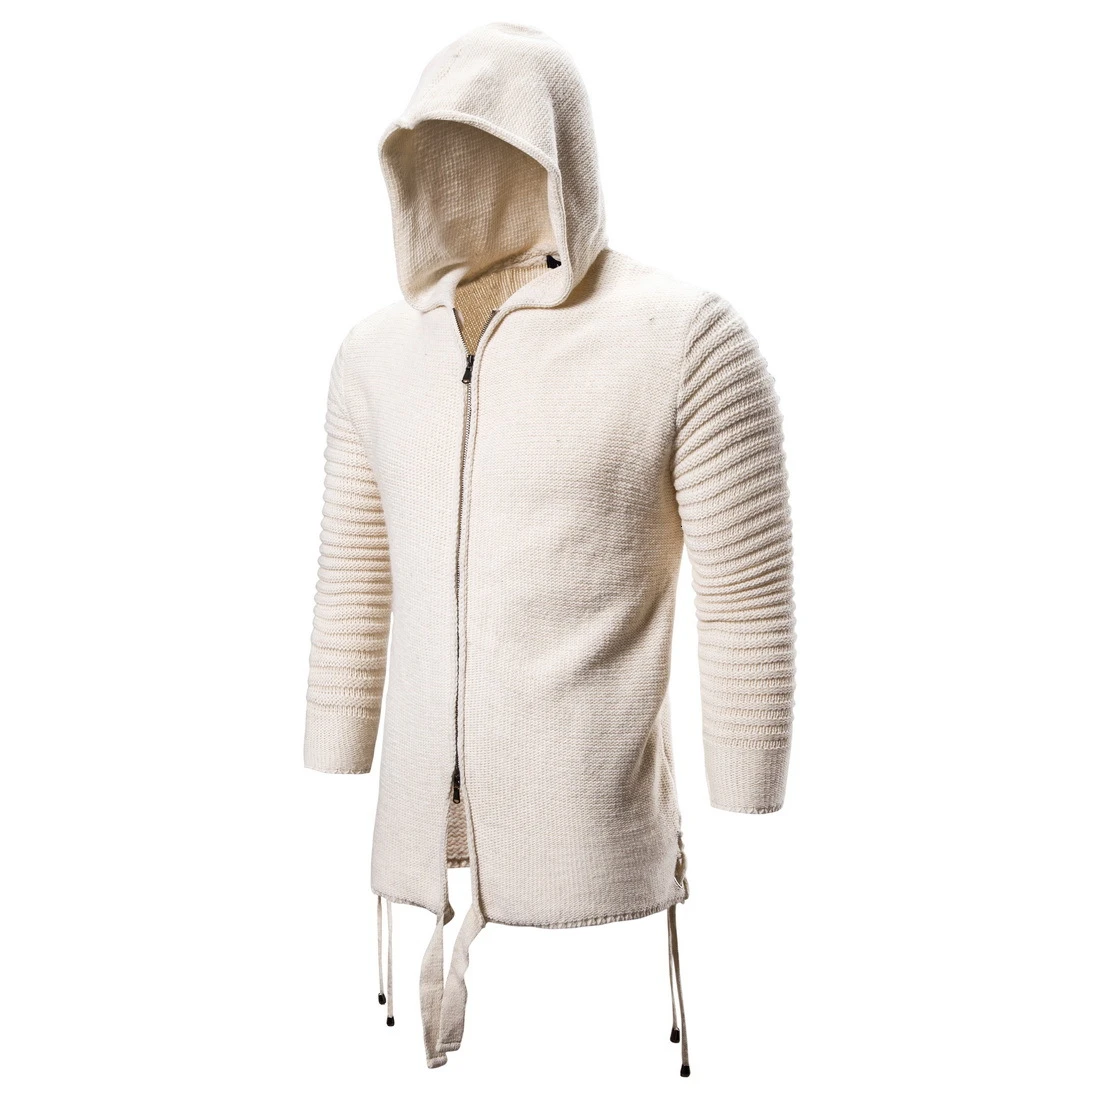 Moomphya/вязаный Тренч с капюшоном и длинным рукавом, Мужская Уличная одежда в стиле хип-хоп на молнии, длинный стильный свитер, пальто для мужчин, зимняя верхняя одежда - Цвет: Хаки